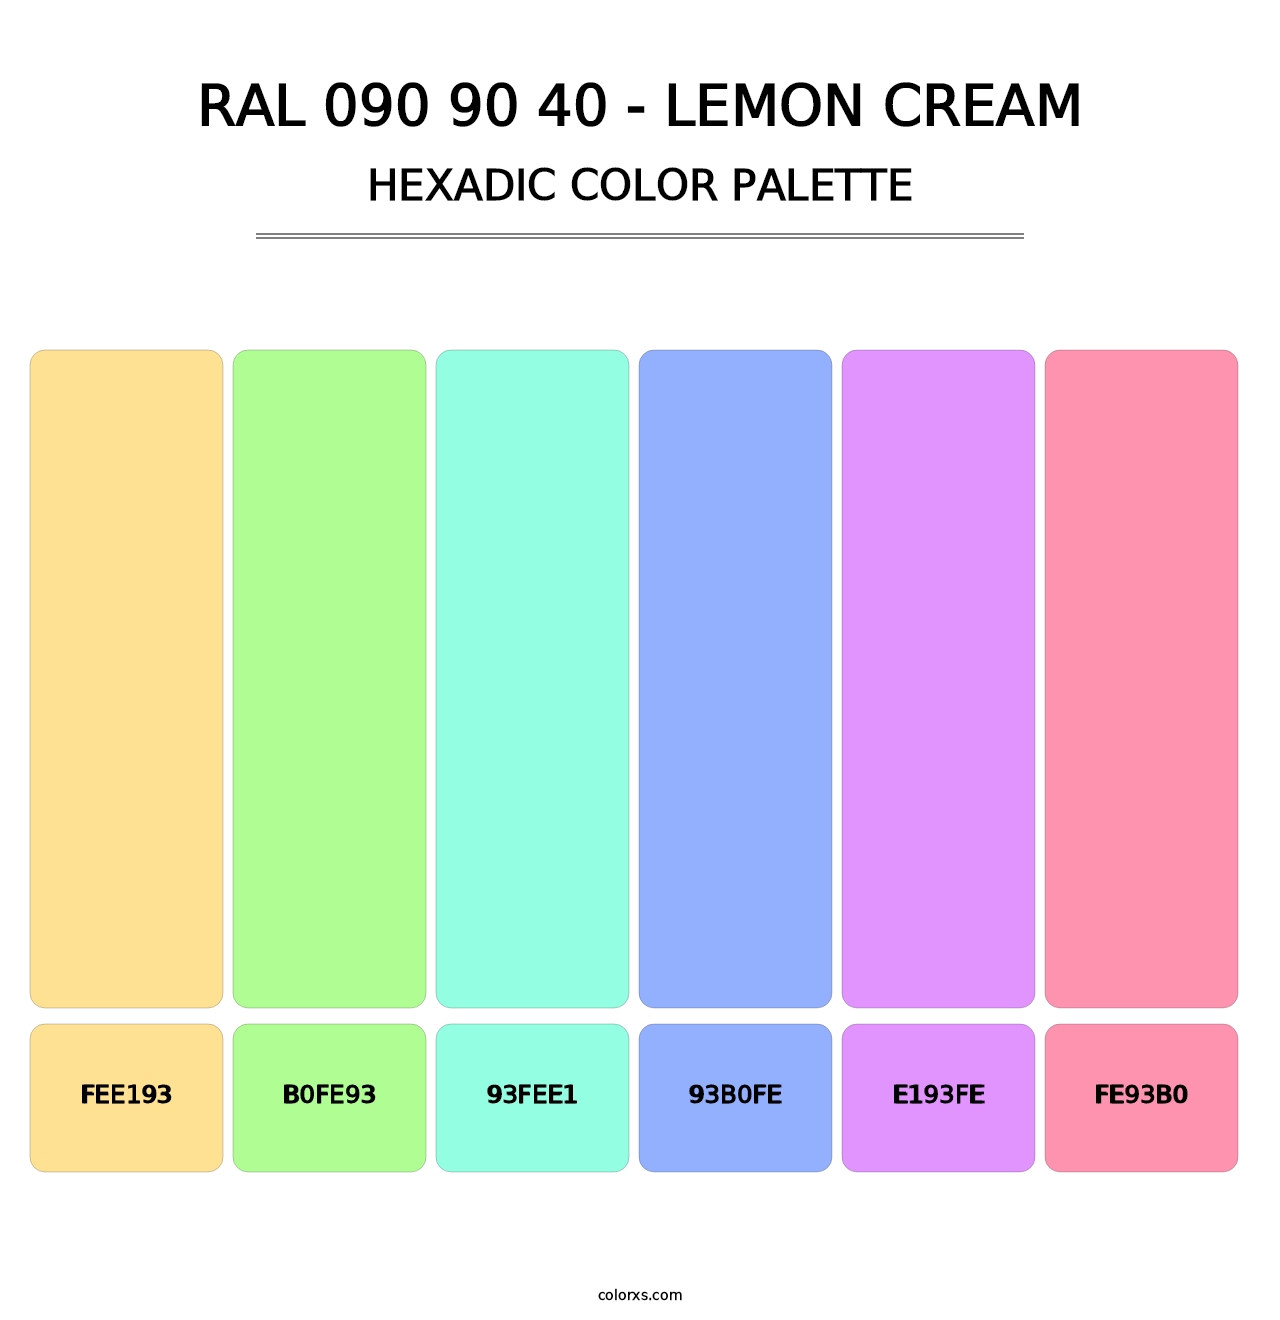 RAL 090 90 40 - Lemon Cream - Hexadic Color Palette